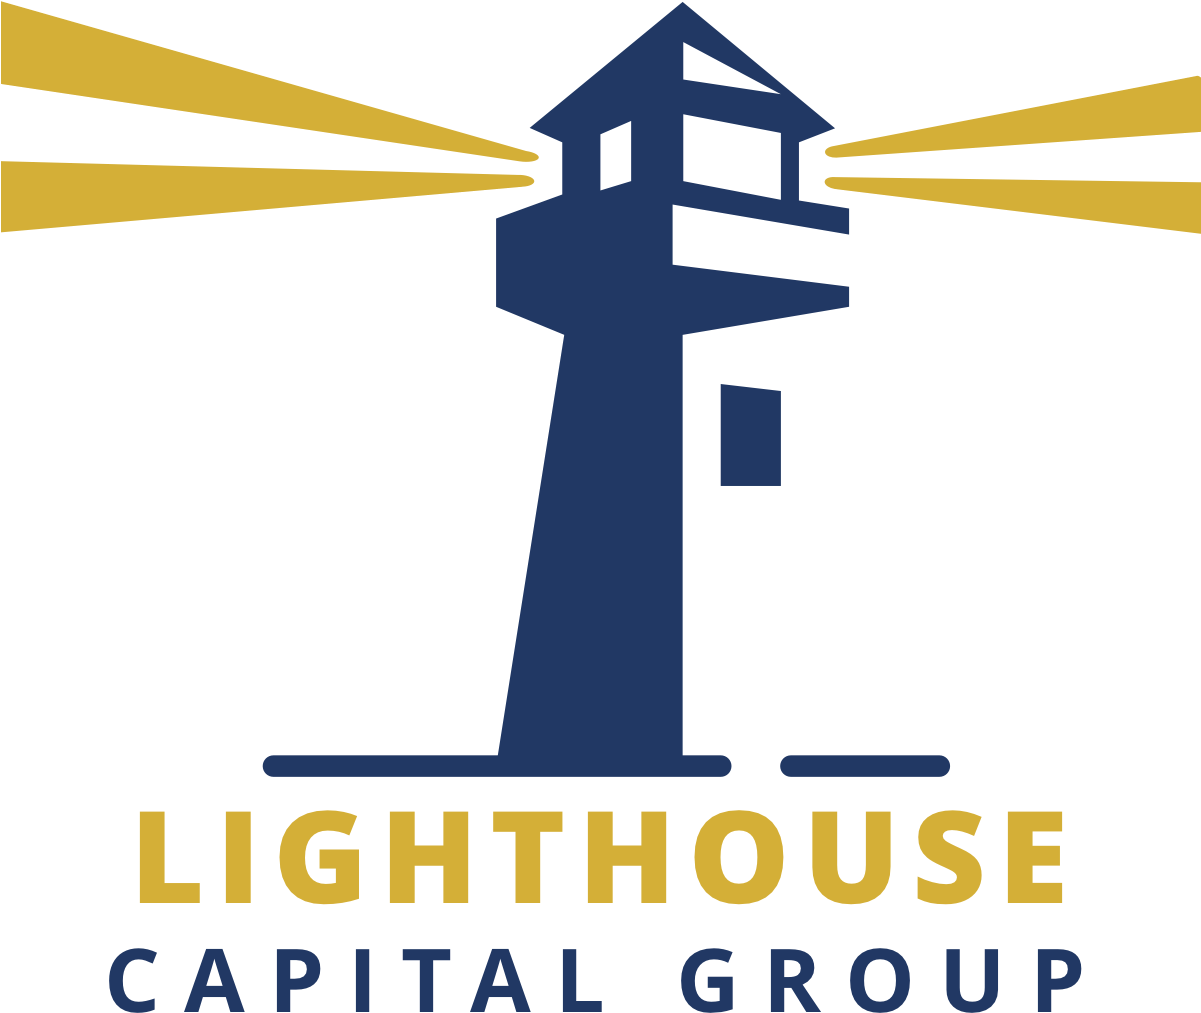 Lighthouse Capital Group - Lighthouse Capital Group (1200x1200)